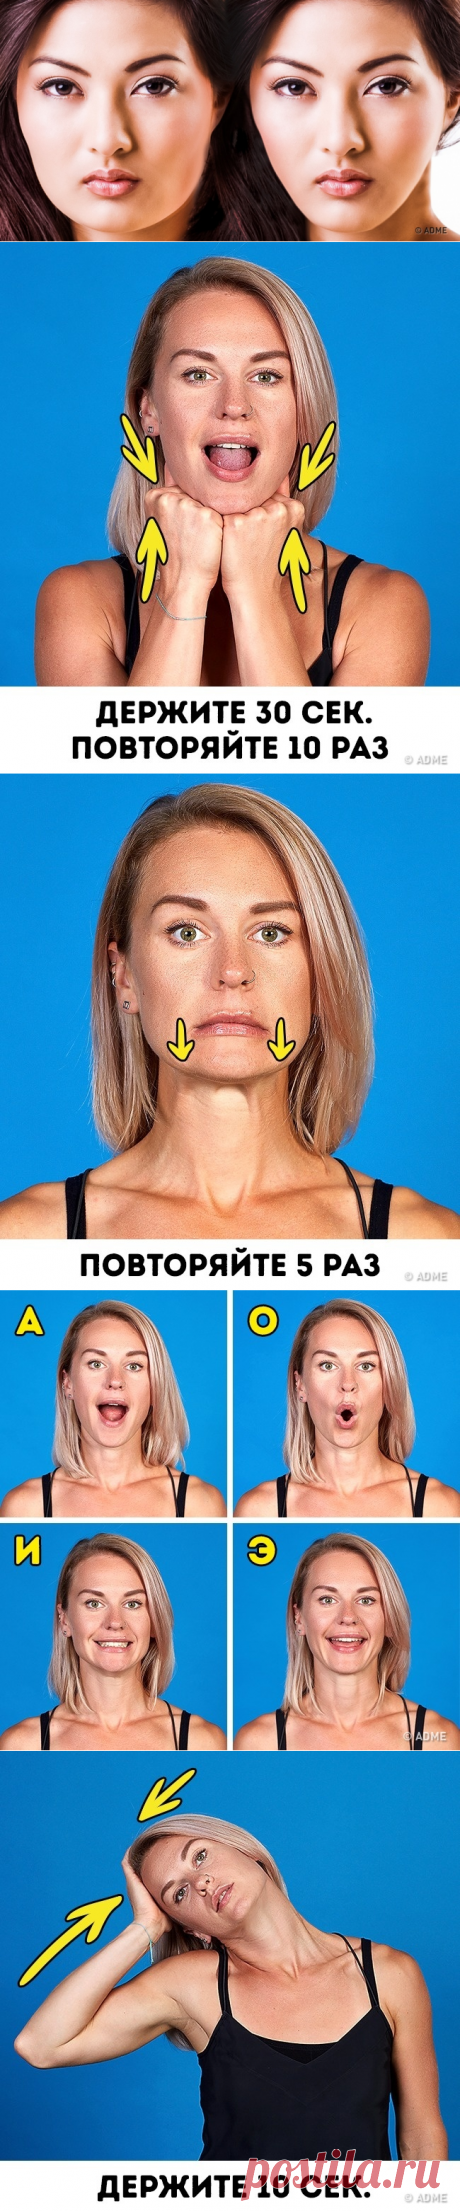 8 действенных упражнений для подтяжки овала лица